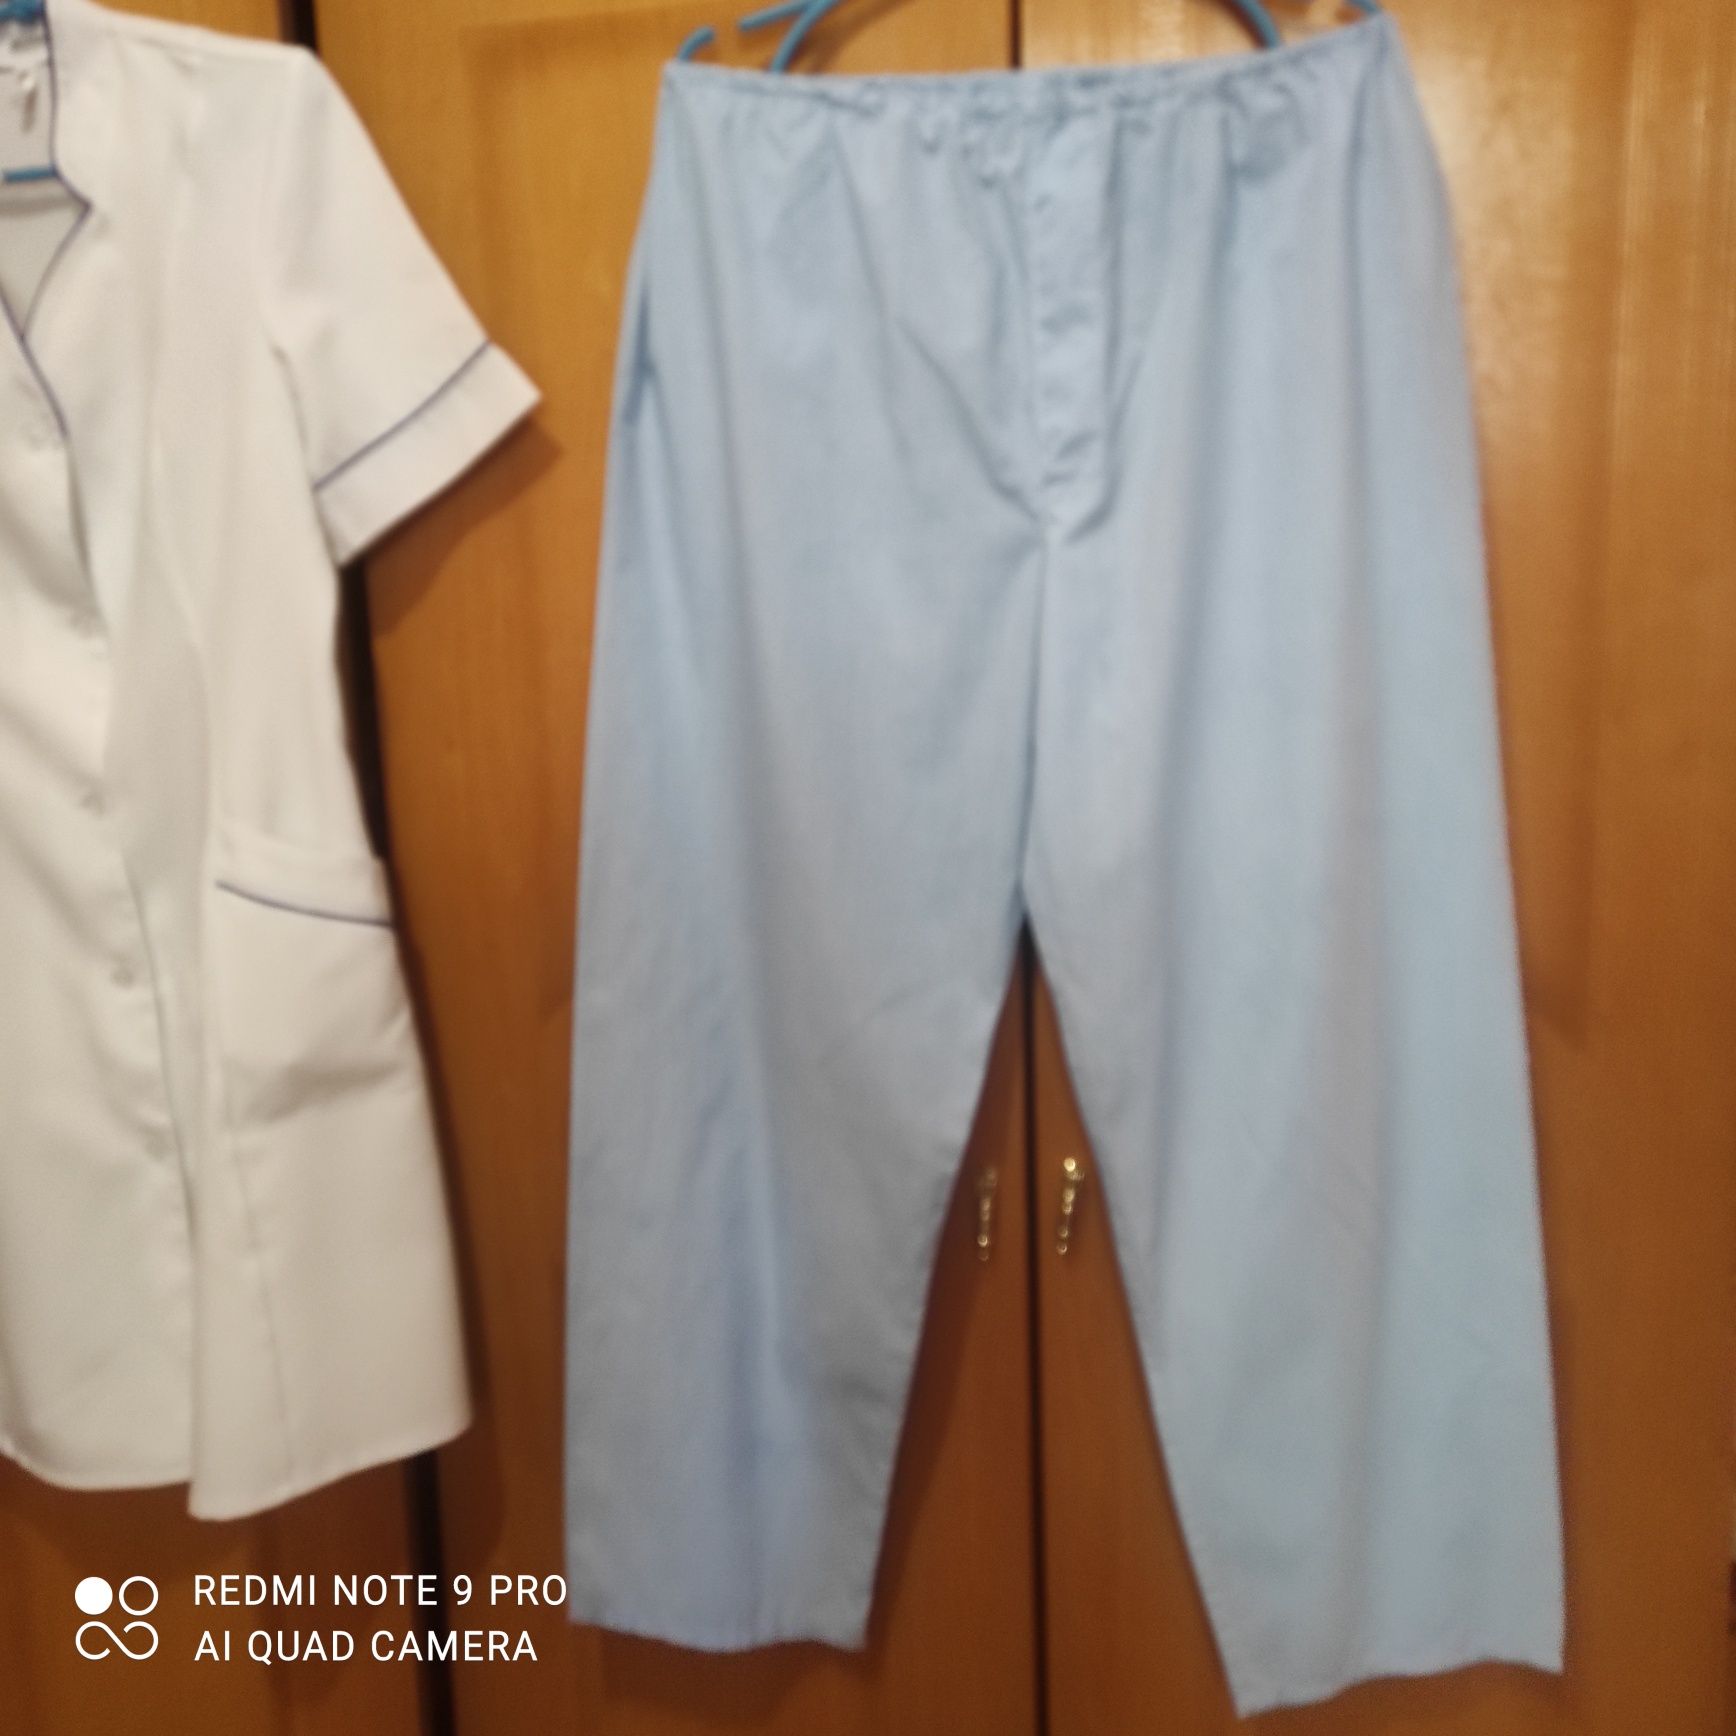 Медицинские брюки от костюмов, под халат,размер 46-50